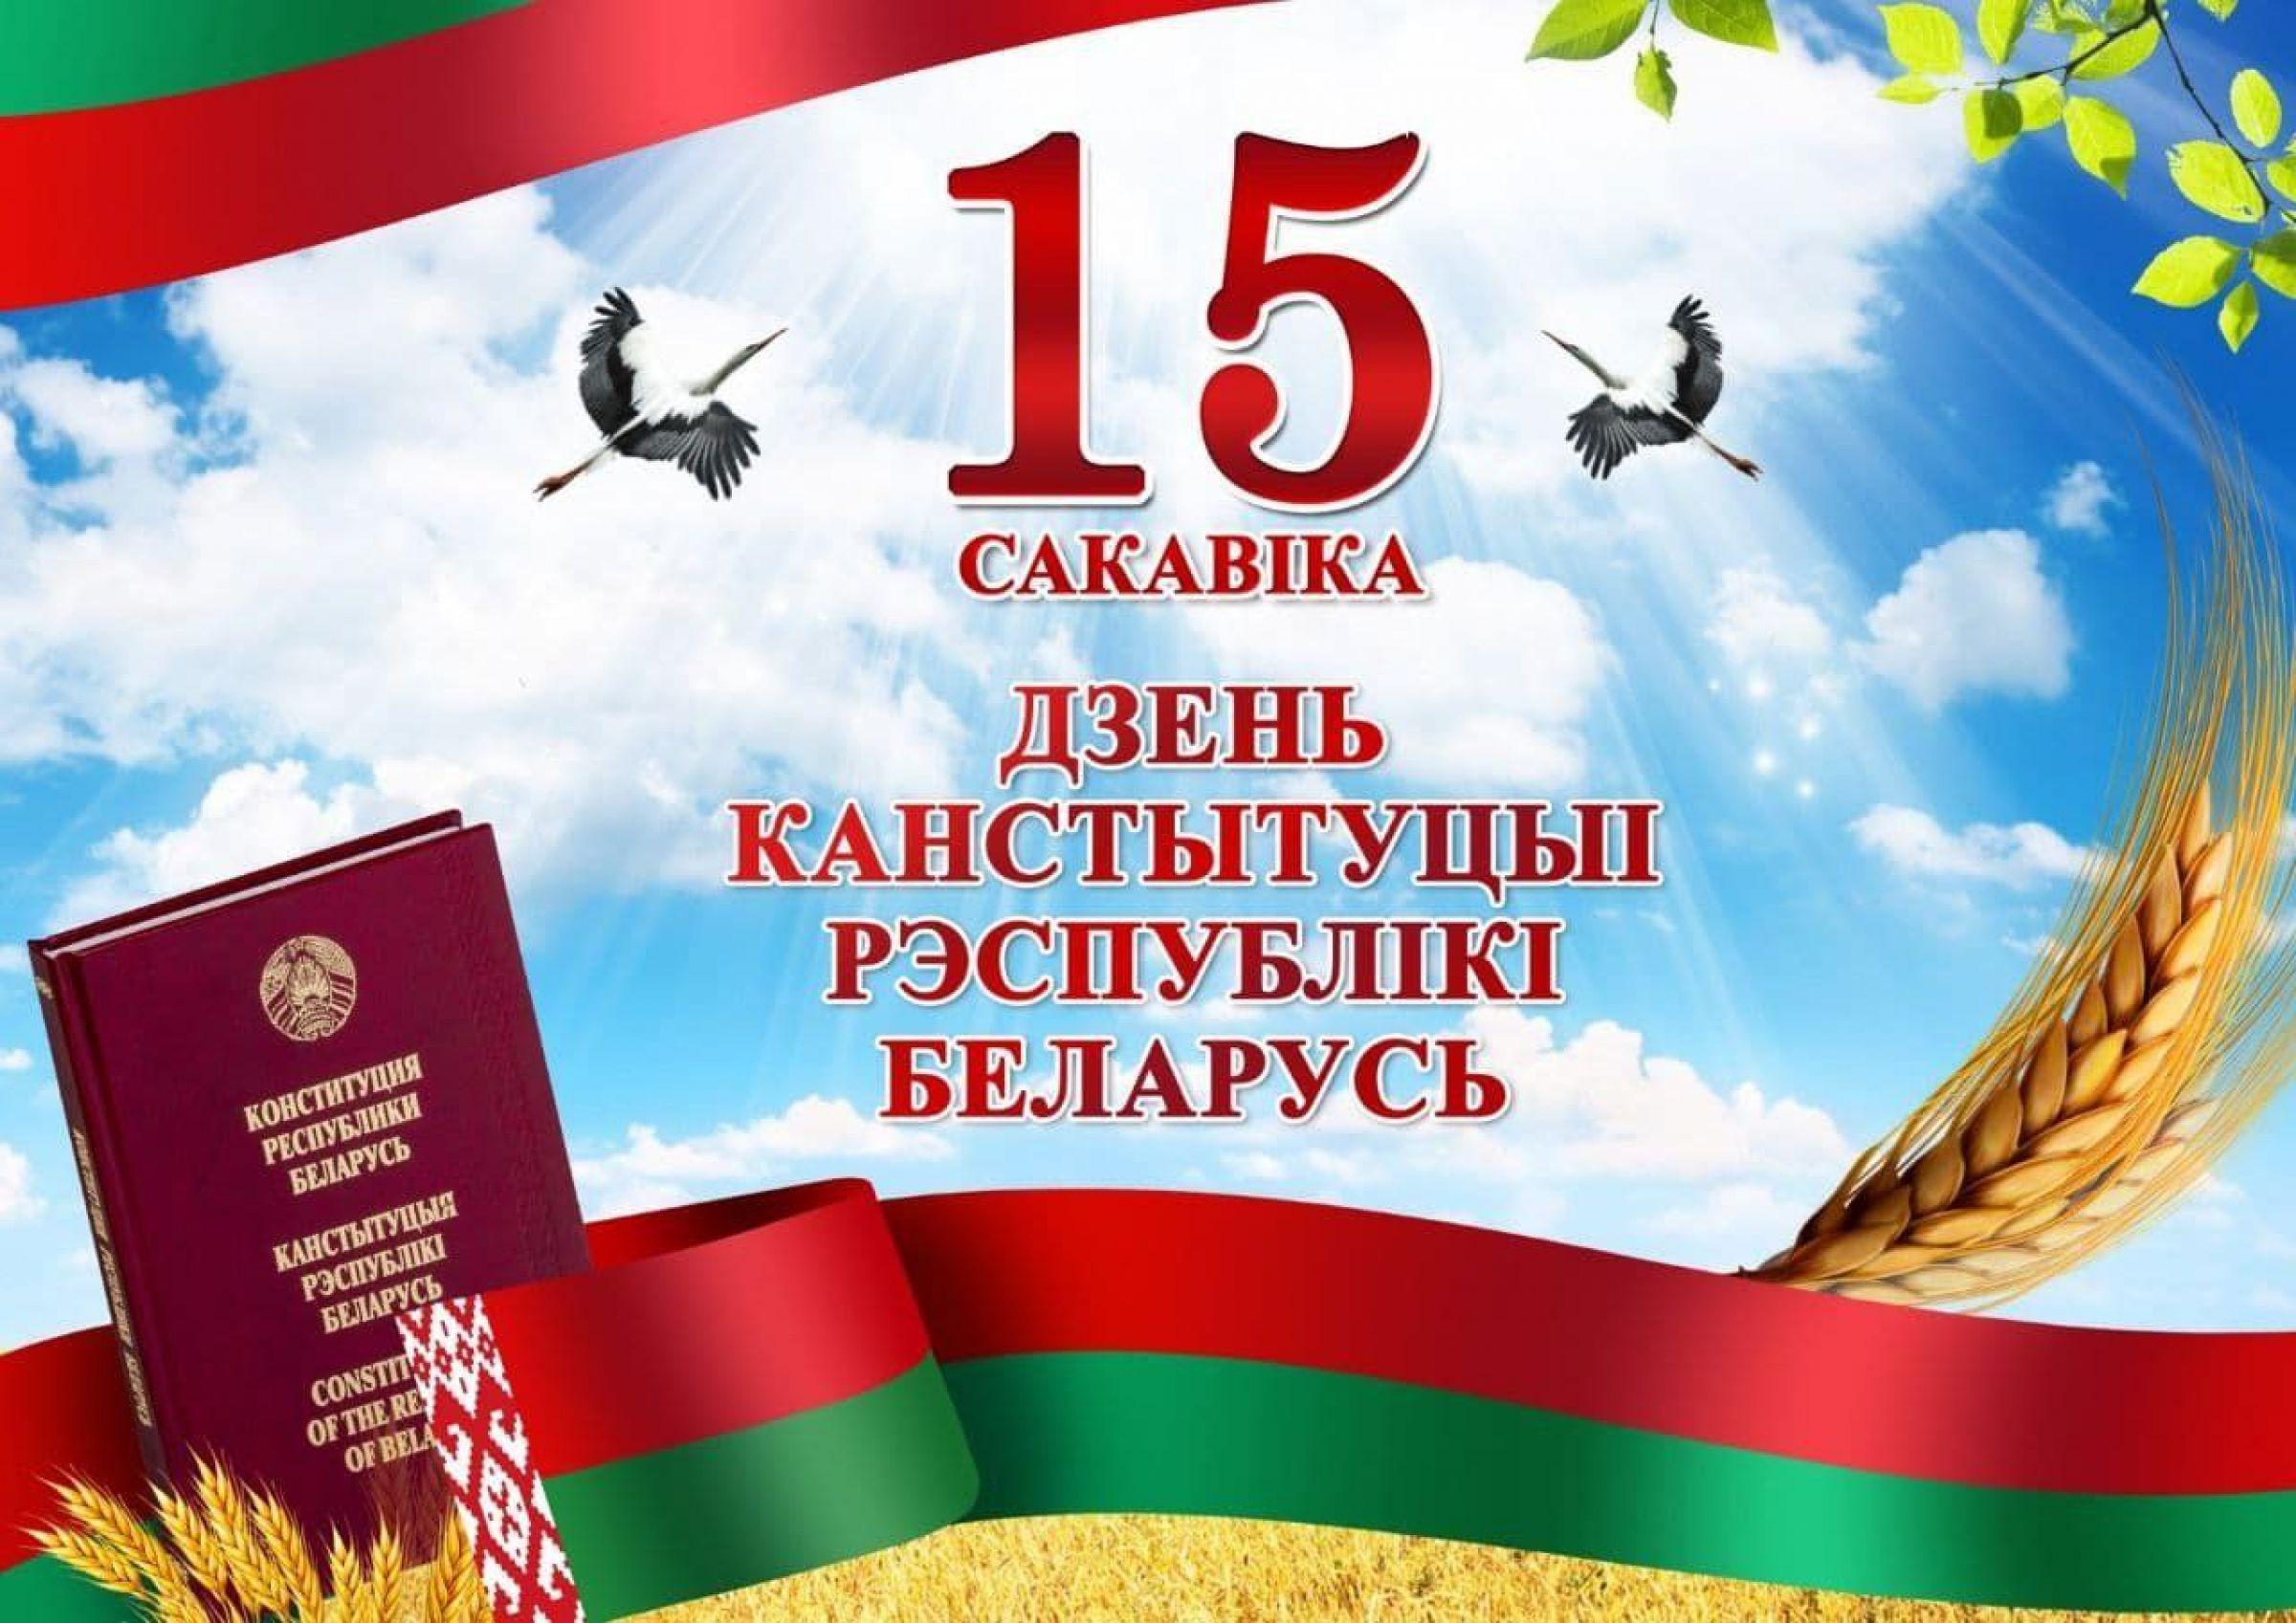 Информационный час “День Конституции Республики Беларусь”